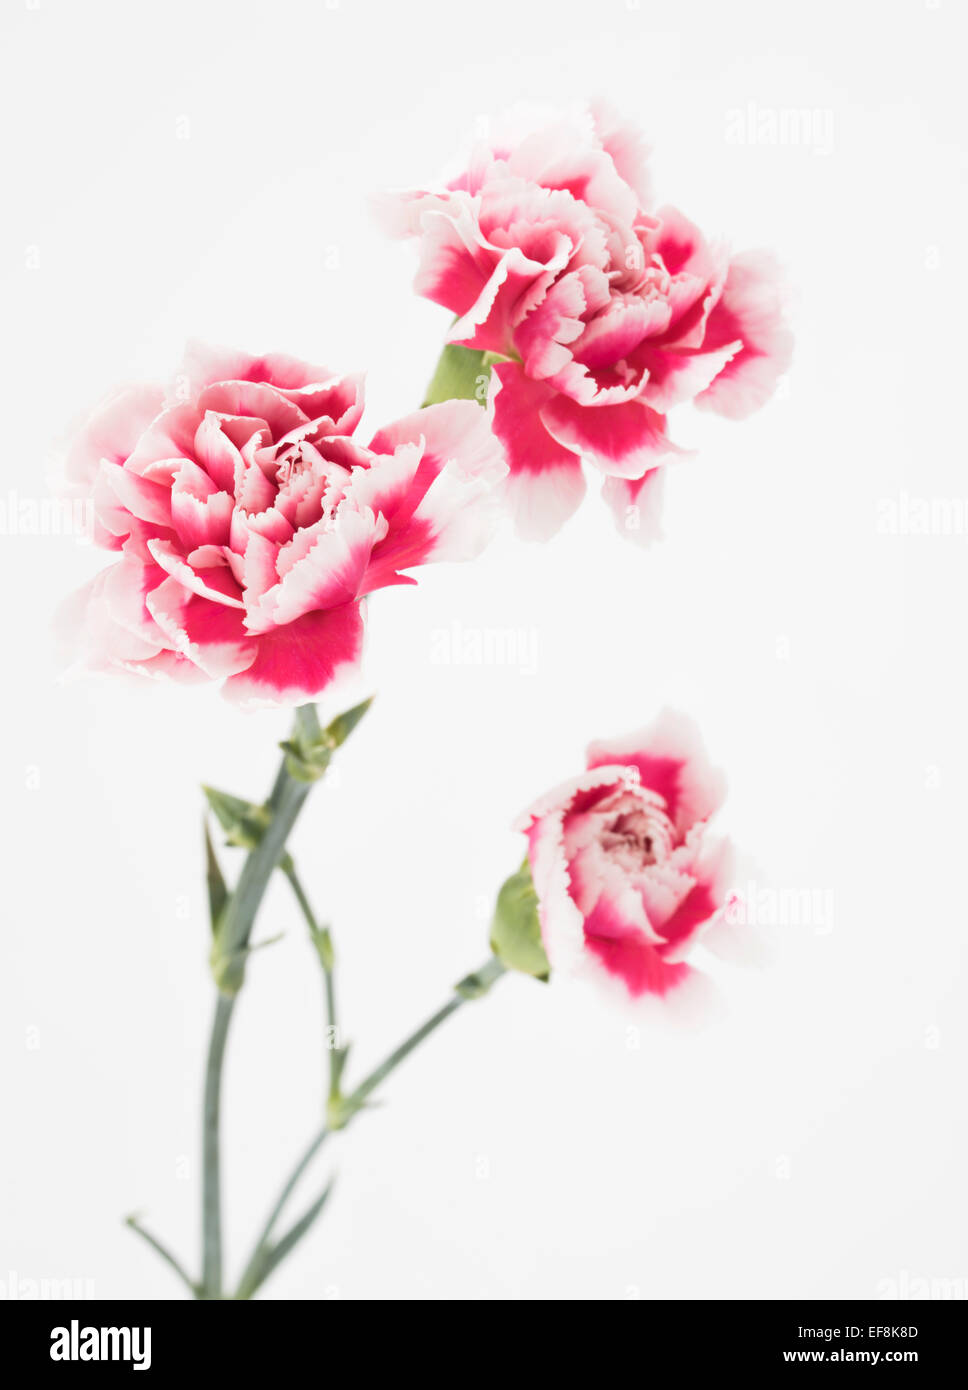 Rosa e garofano bianco. Dianthus caryophyllus, garofano o di chiodi di garofano rosa Foto Stock